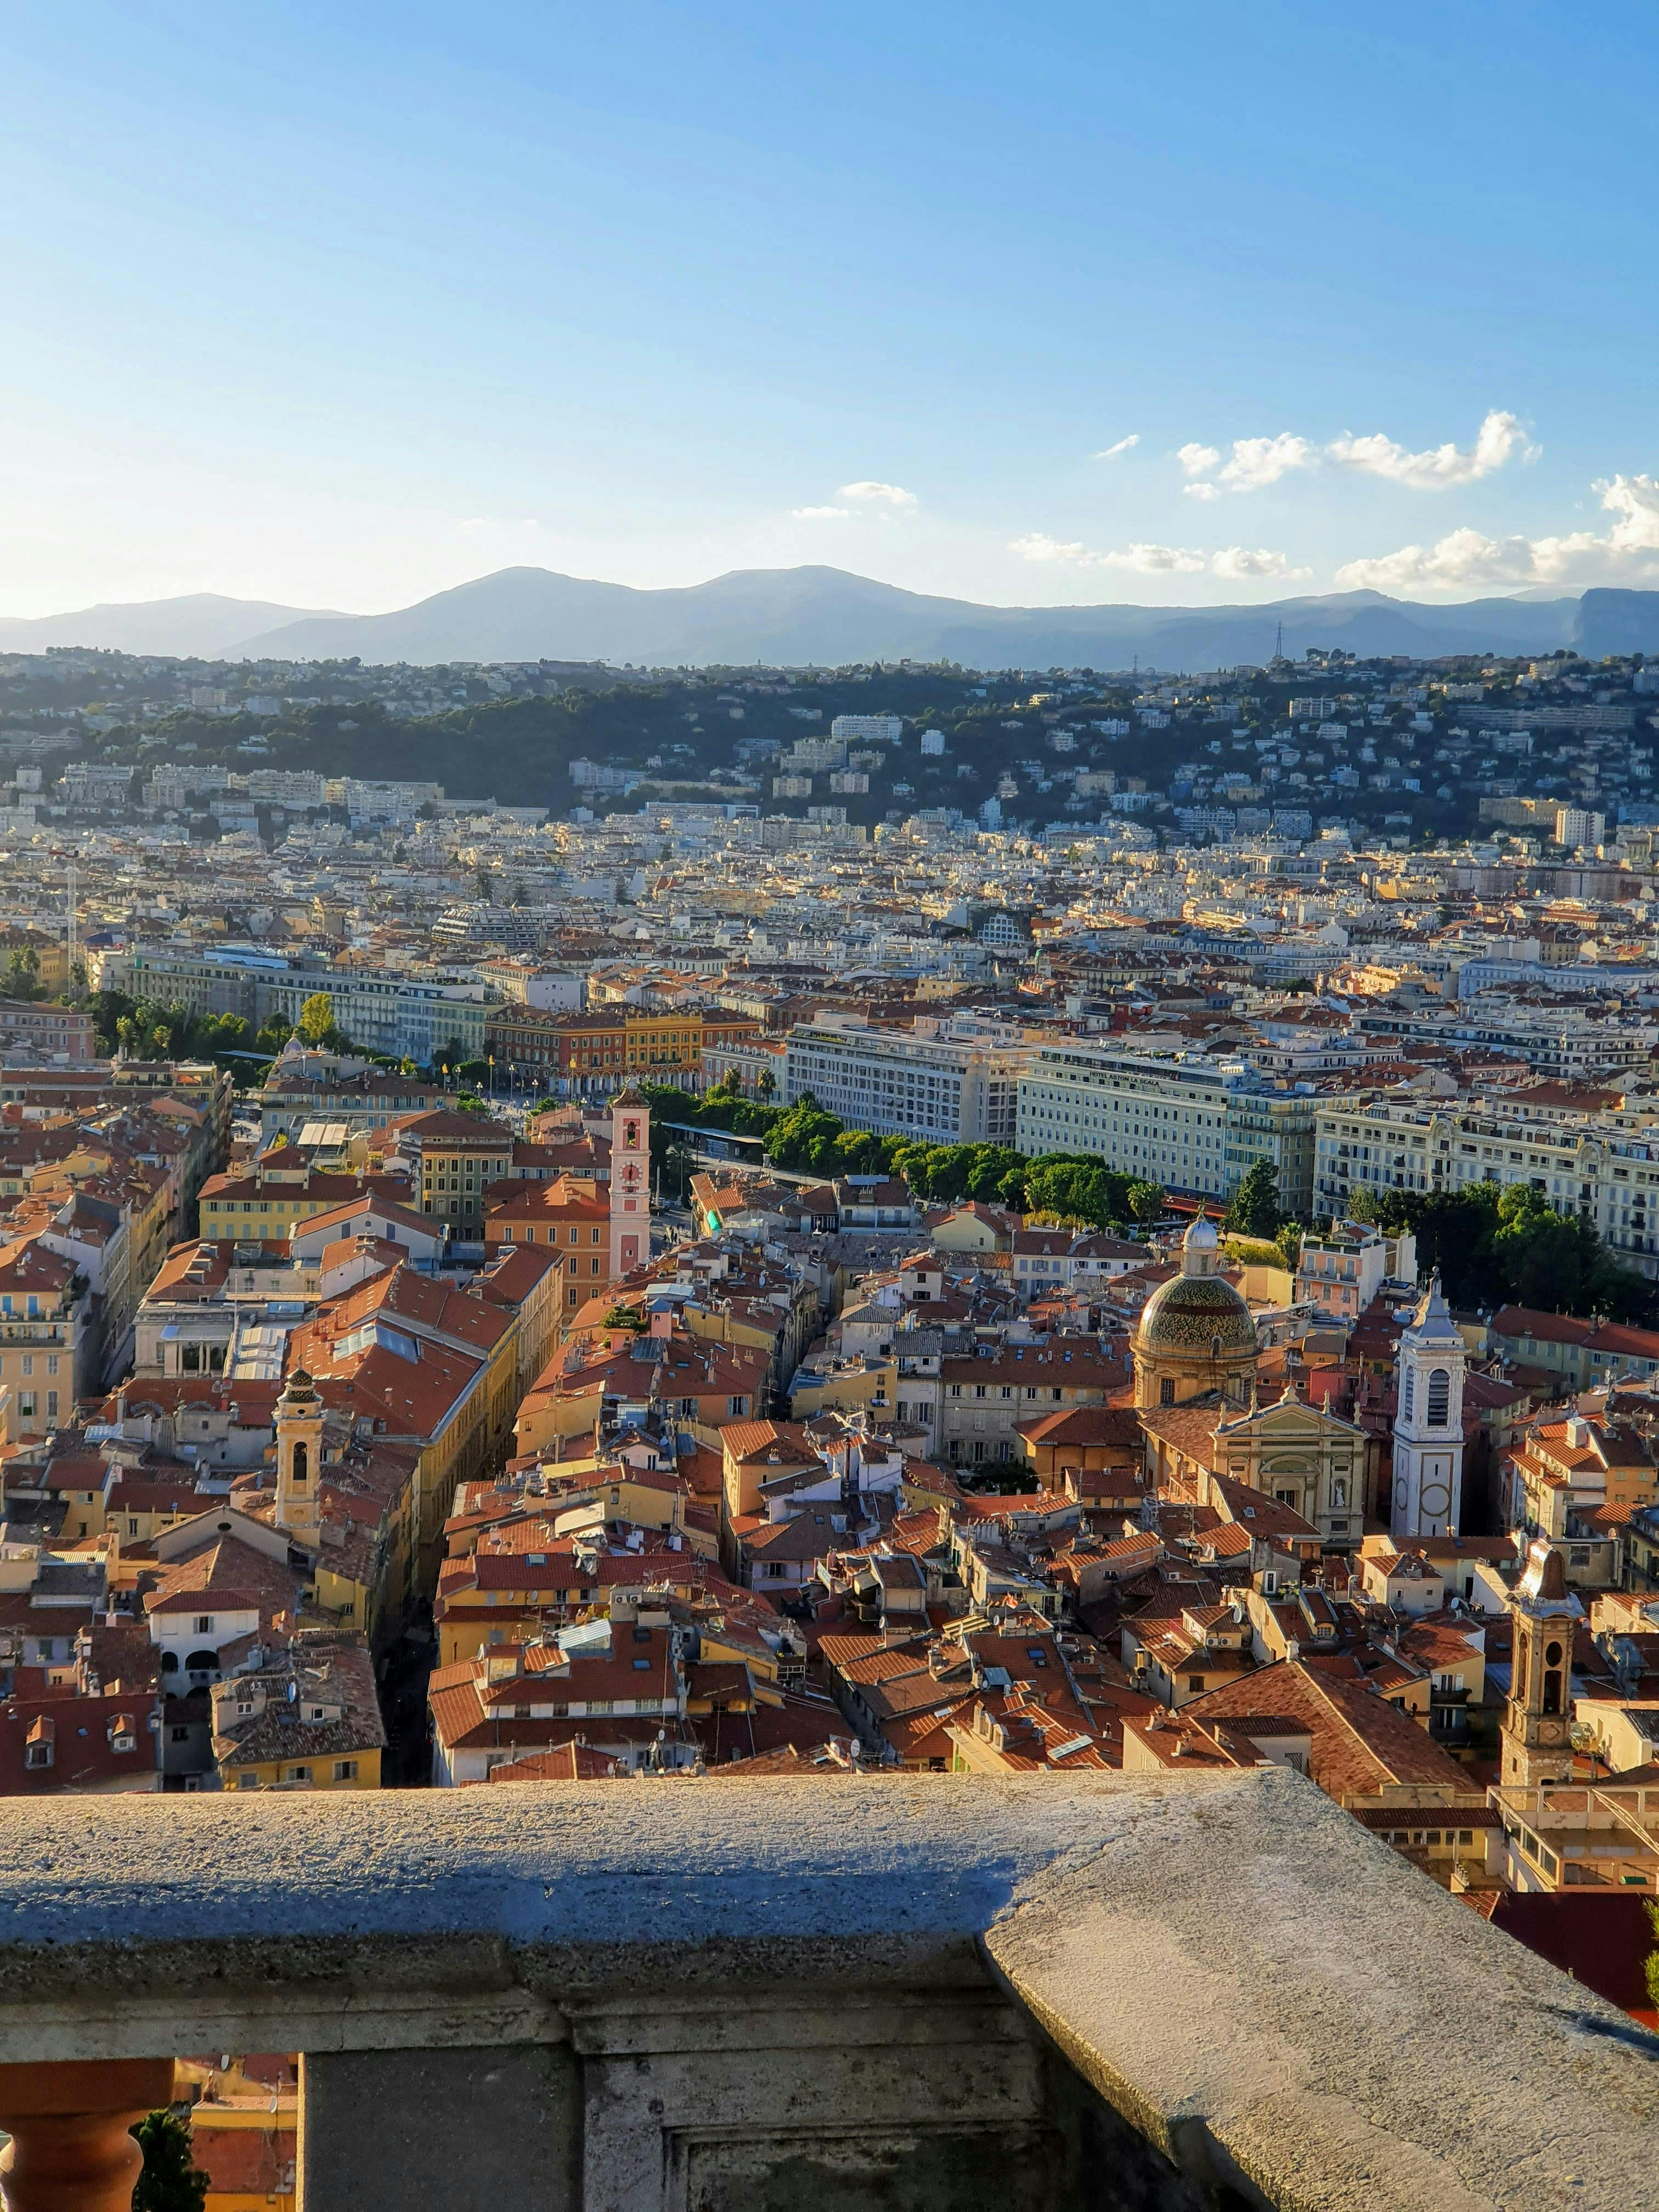 Impresionante vista aérea de Niza, Francia, desde lo alto de una torre.